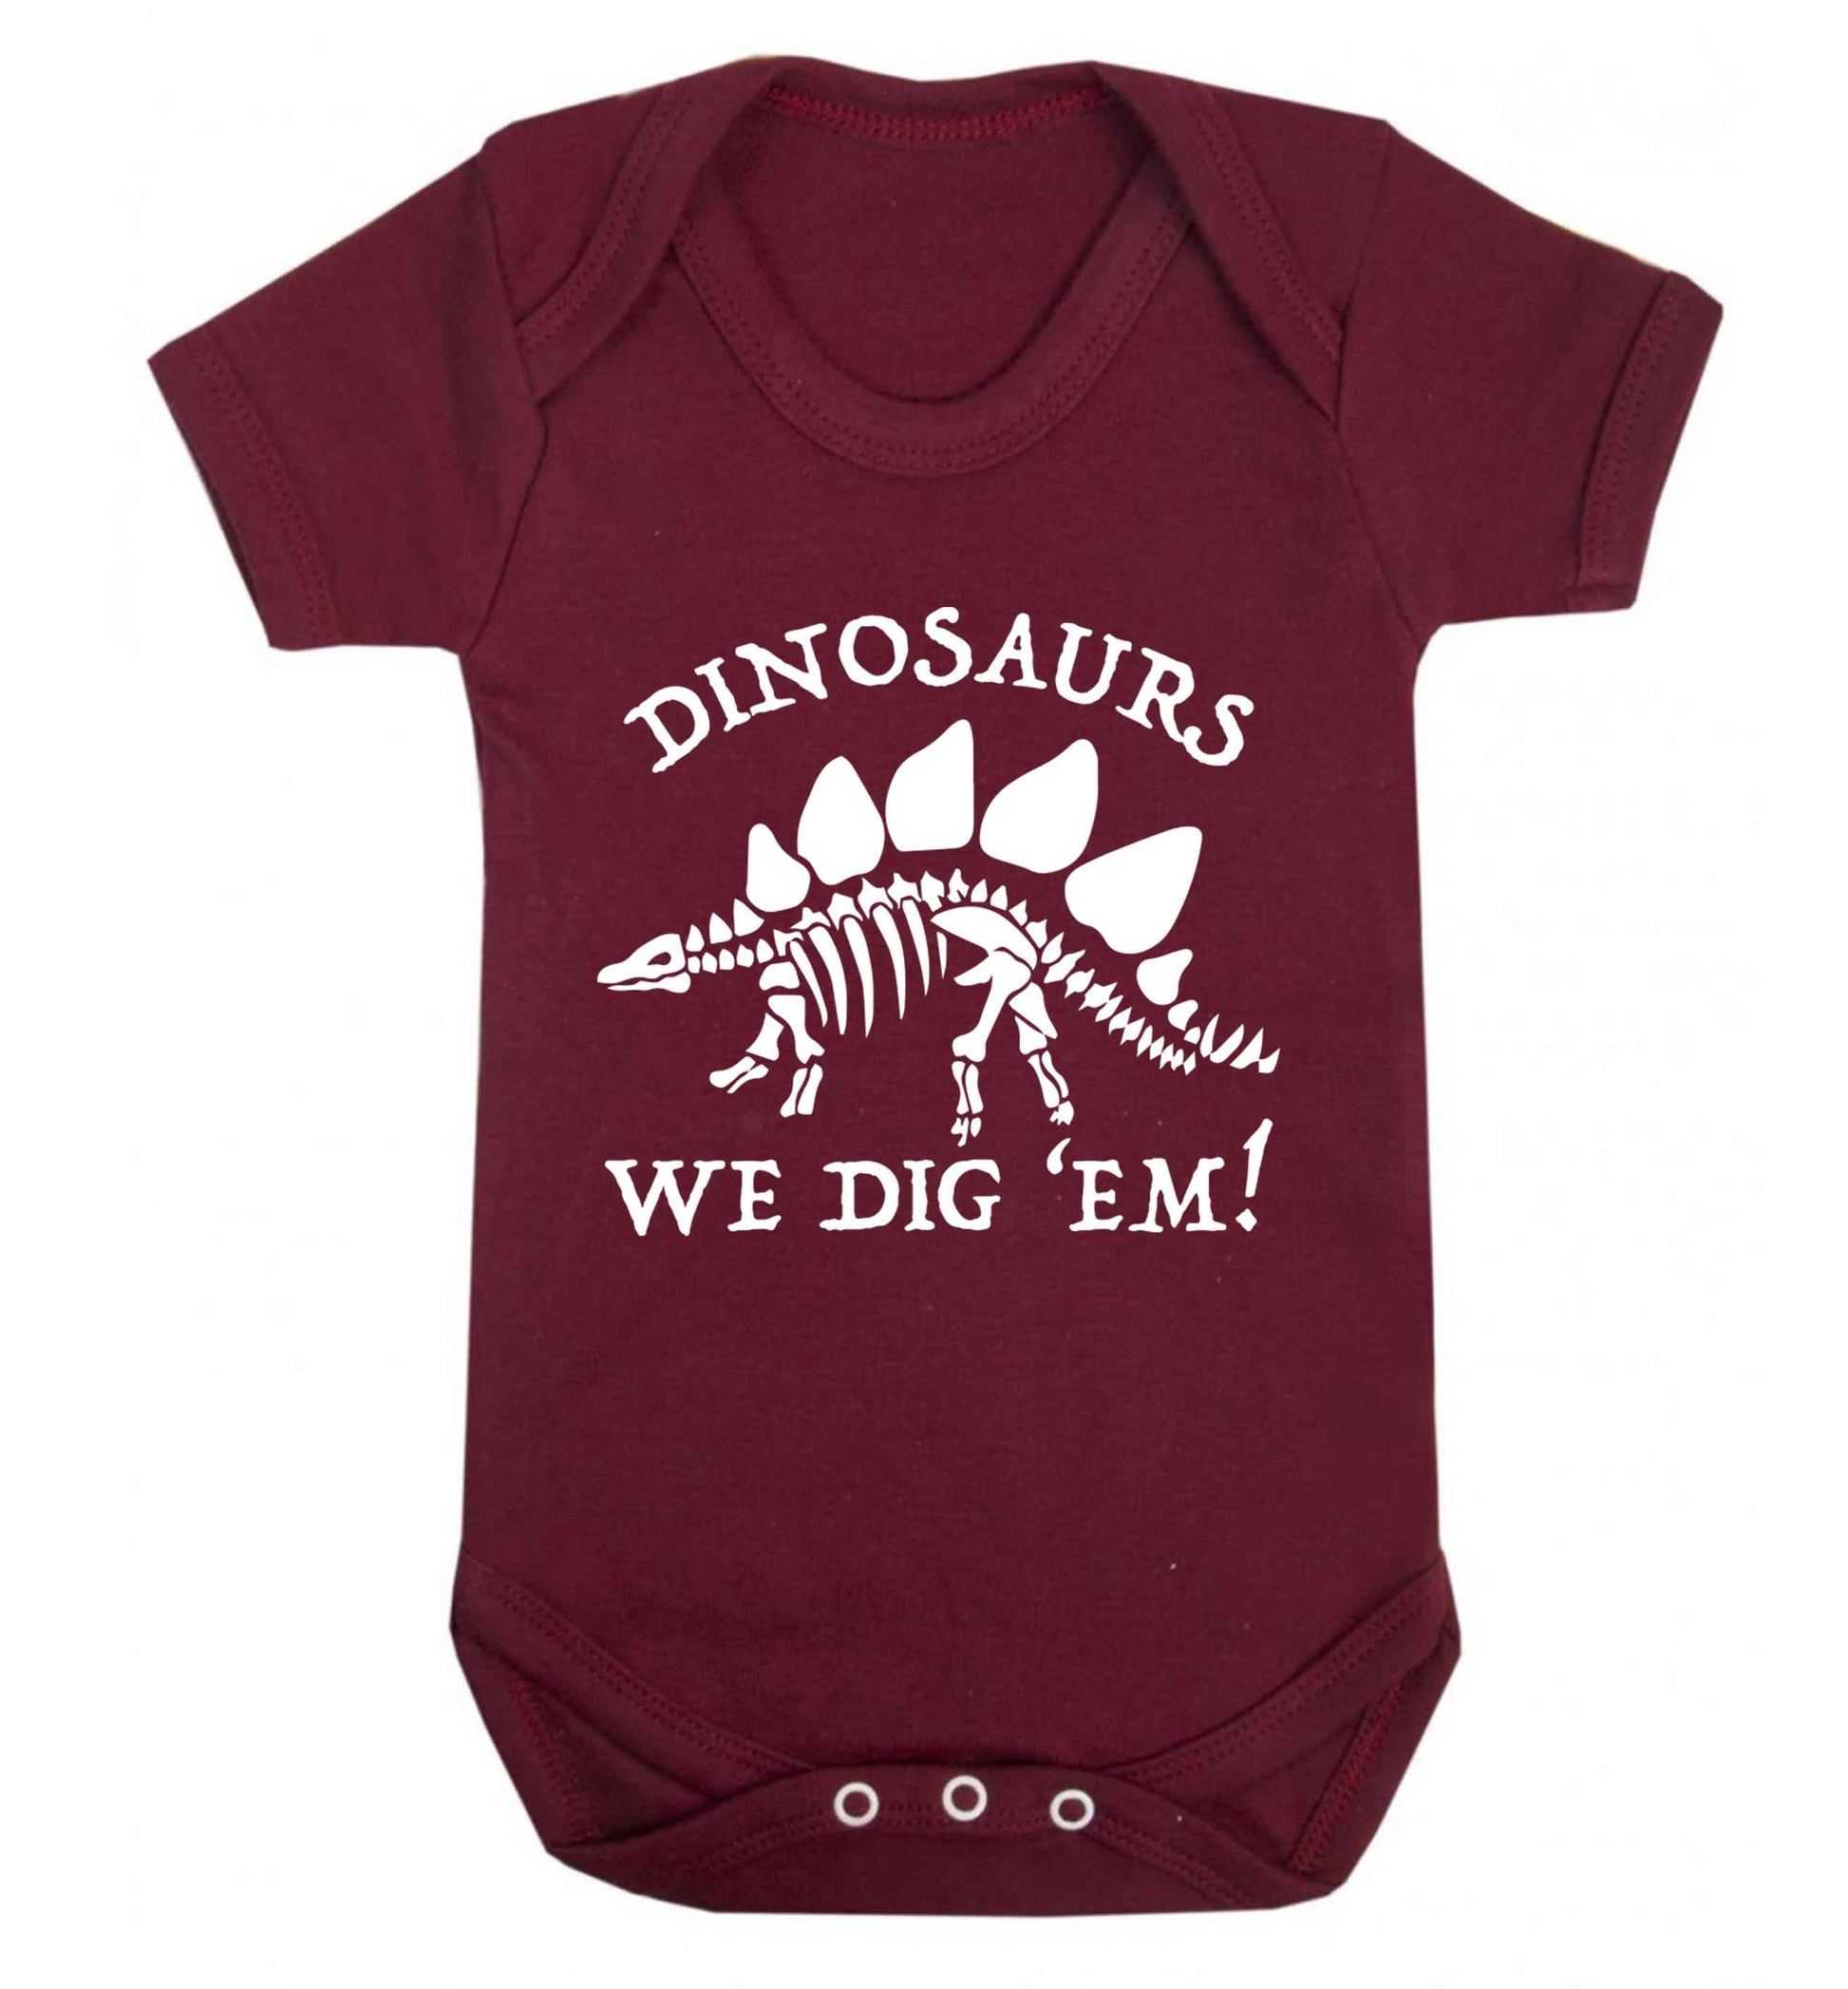 Dinosaurs we dig 'em! Baby Vest maroon 18-24 months